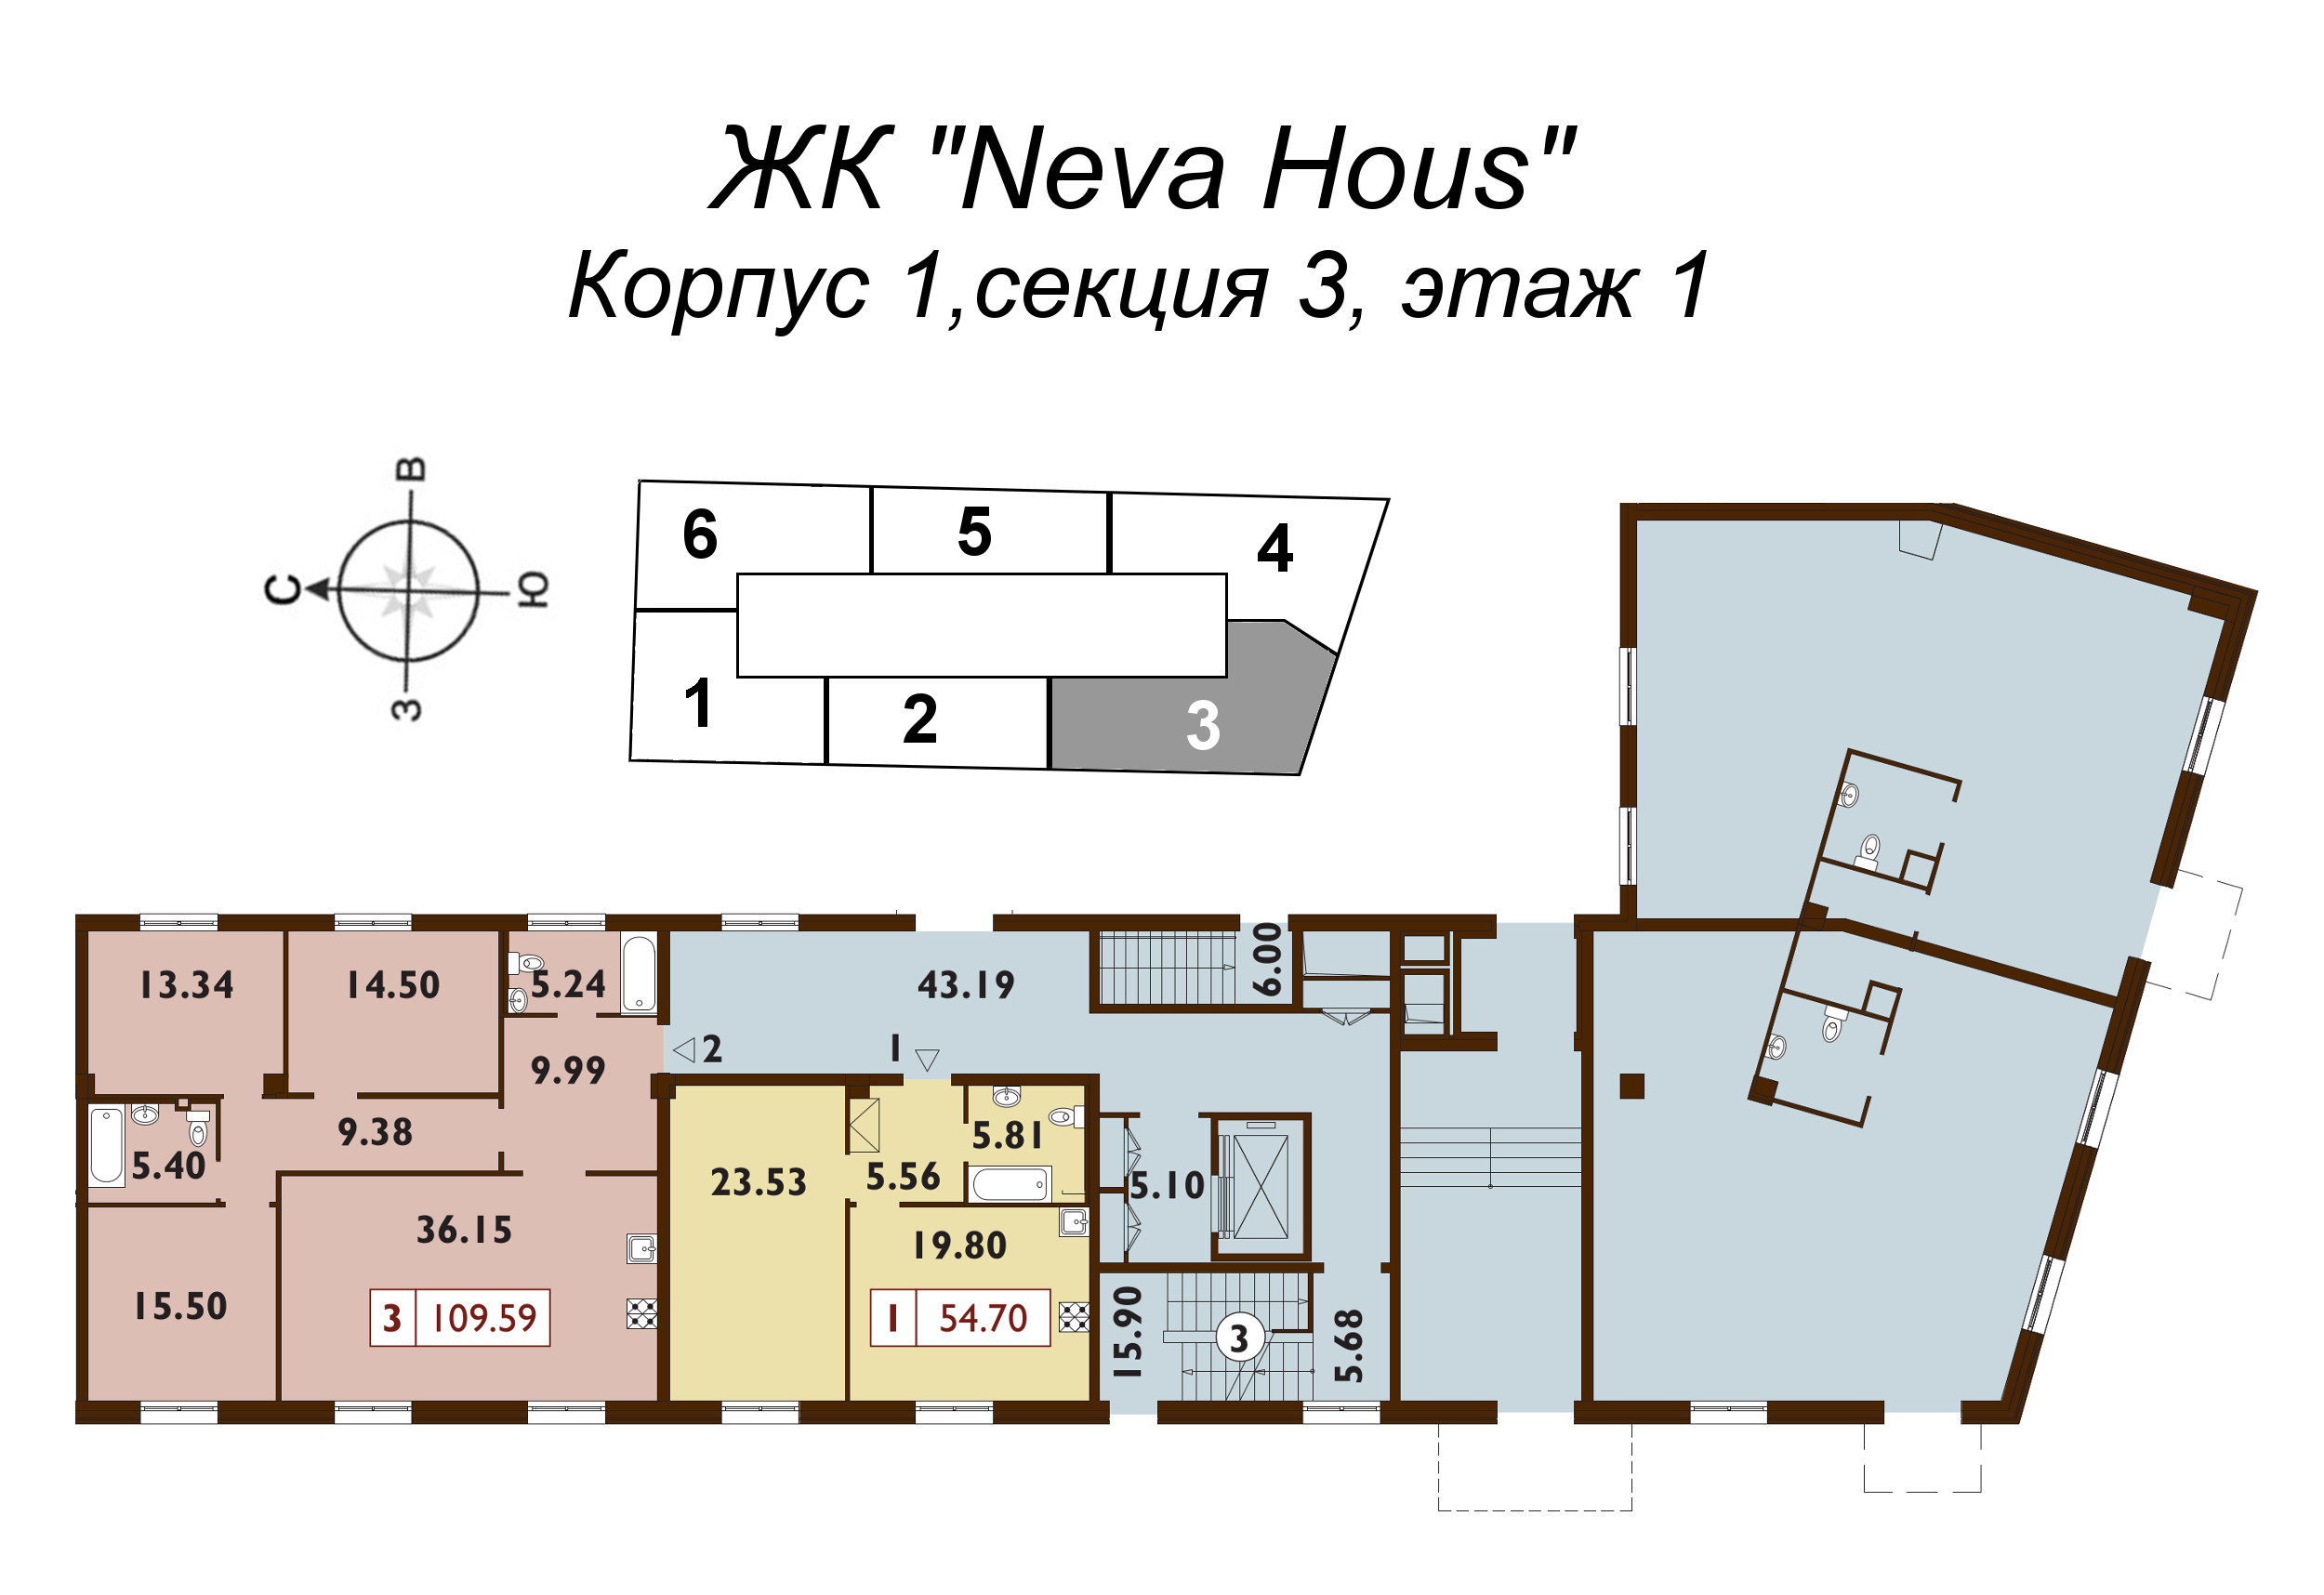 2-комнатная (Евро) квартира, 54.4 м² в ЖК "Neva Haus" - планировка этажа